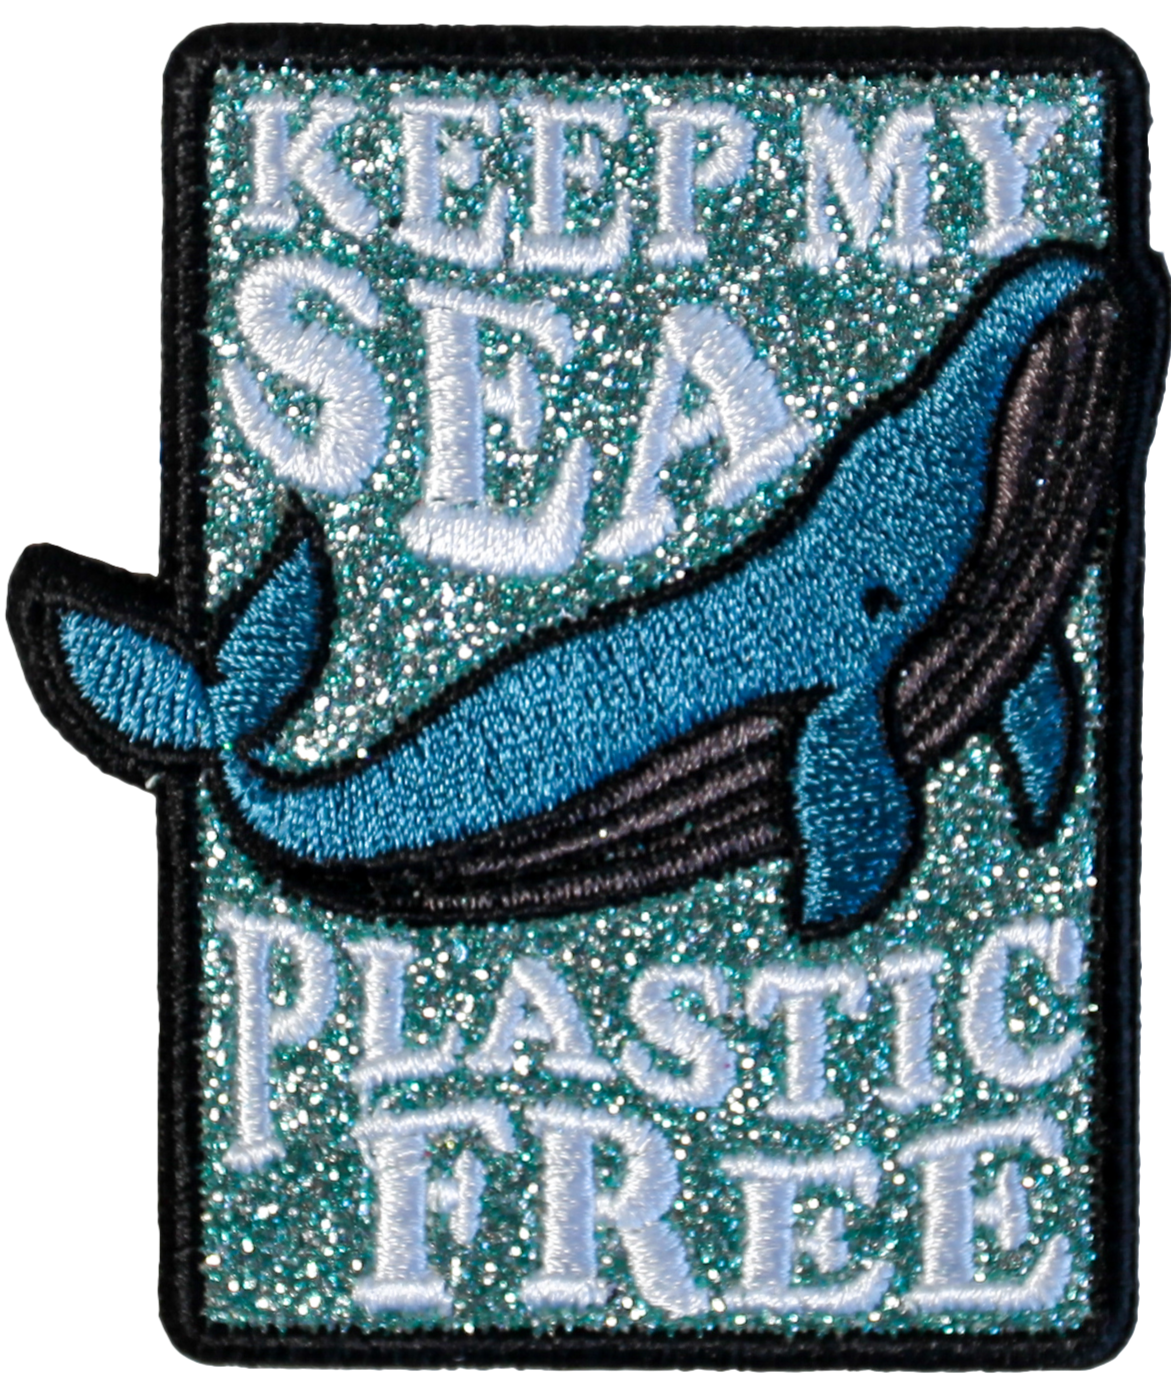 Keep My Sea Plastic Free